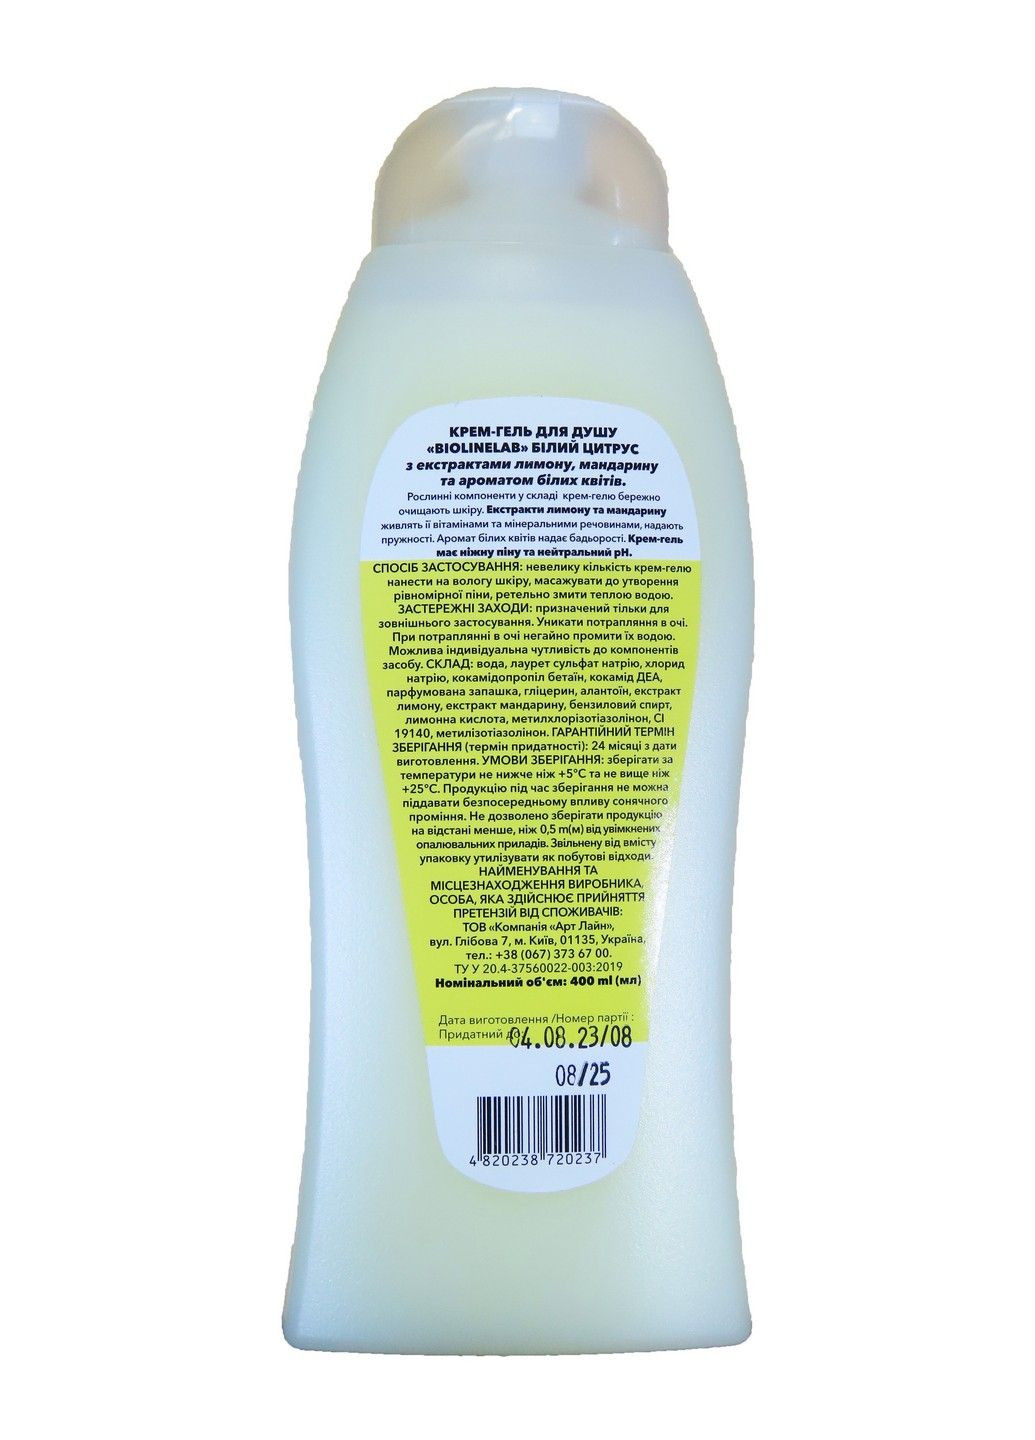 Крем-гель для душа Белый цитрус (с экстрактами лимона, мандарина и ароматом белых цветов), 400 мл Biolinelab (281470333)